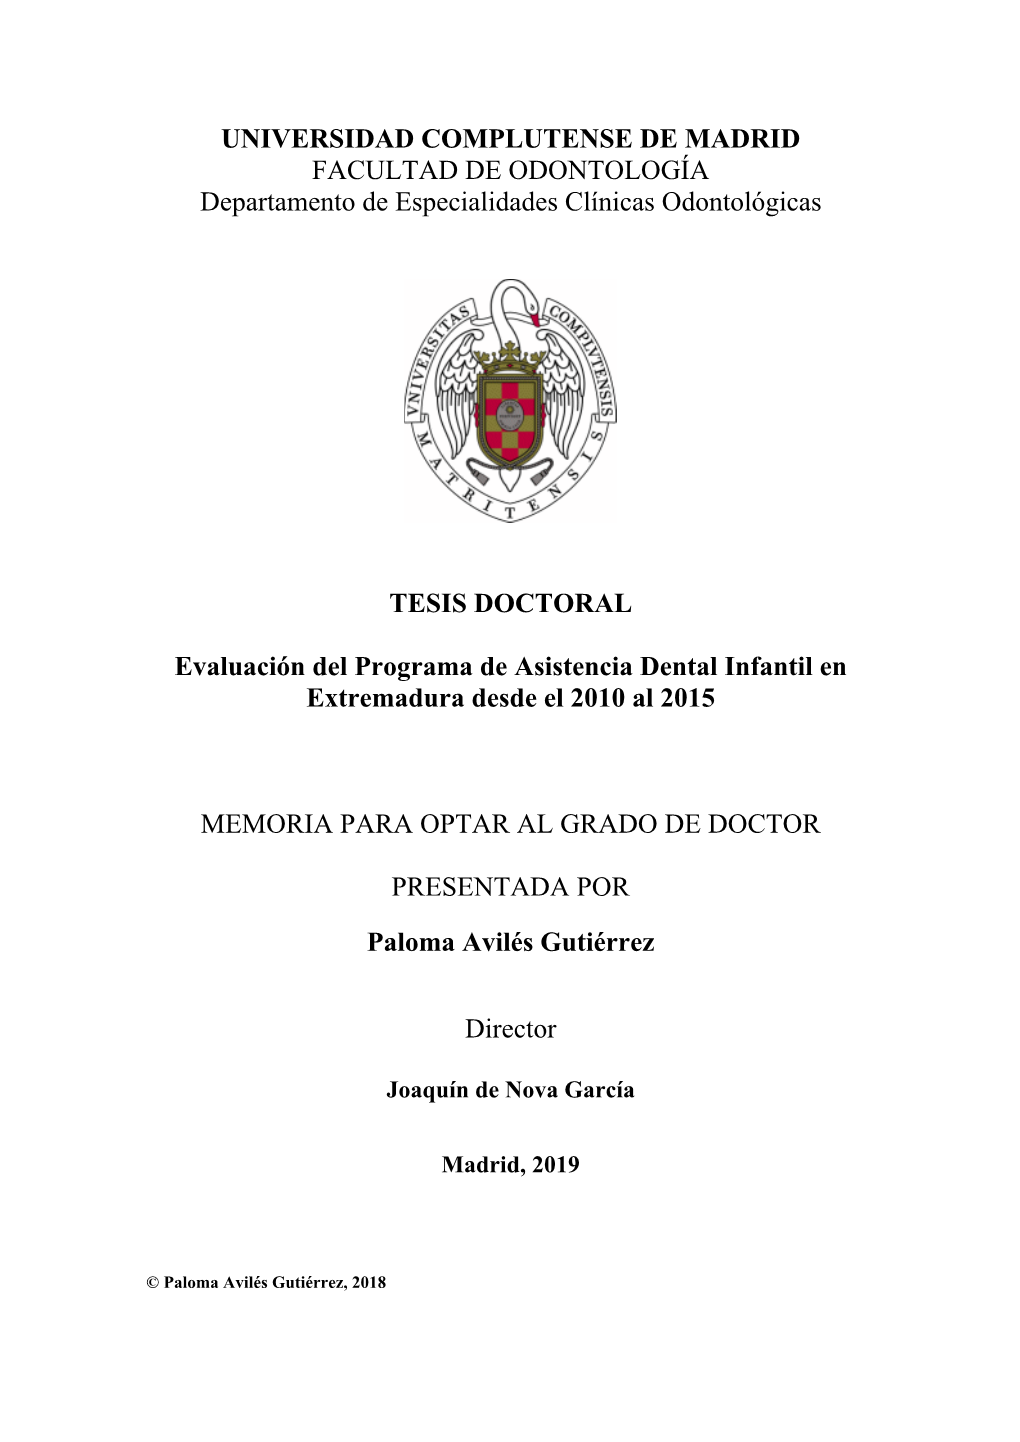 Evaluación Del Programa De Asistencia Dental Infantil En Extremadura Desde El 2010 Al 2015